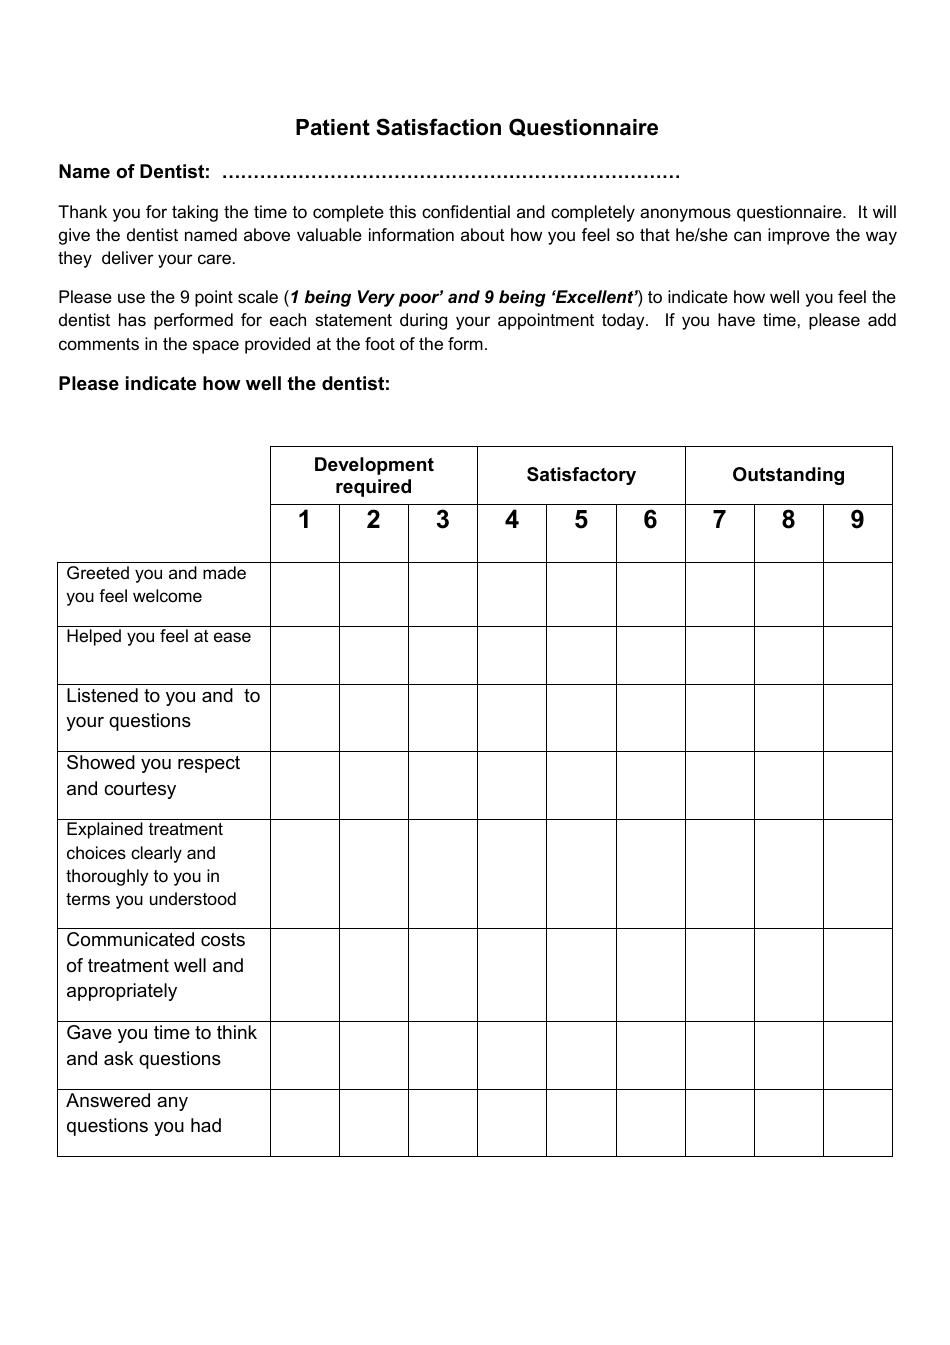 Dental Patient Satisfaction Questionnaire - Image Preview